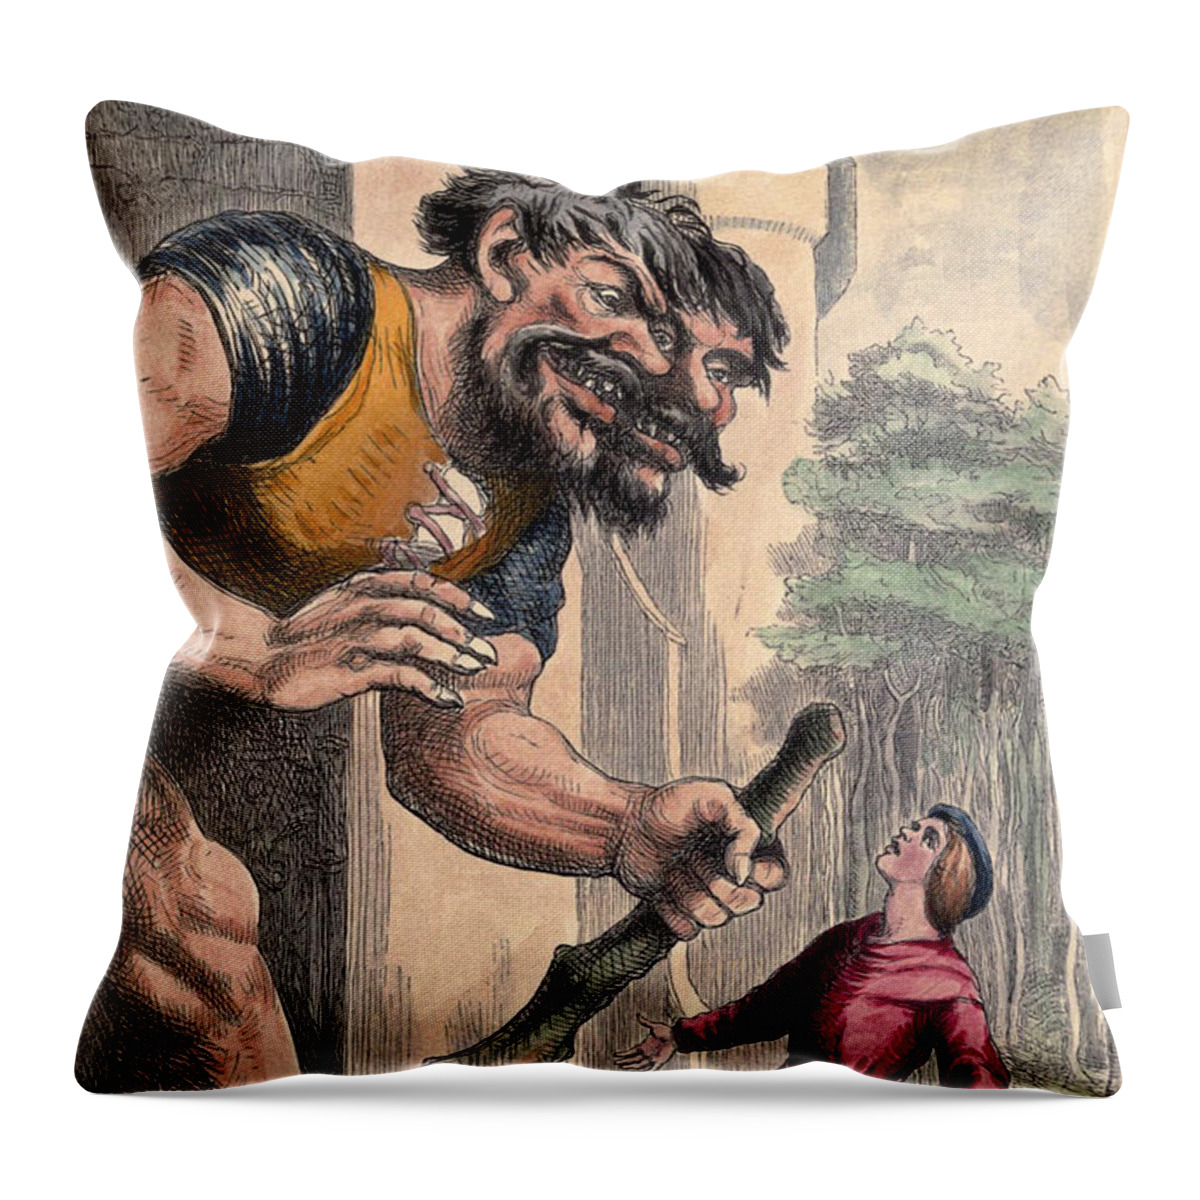 Giant Throw Pillow